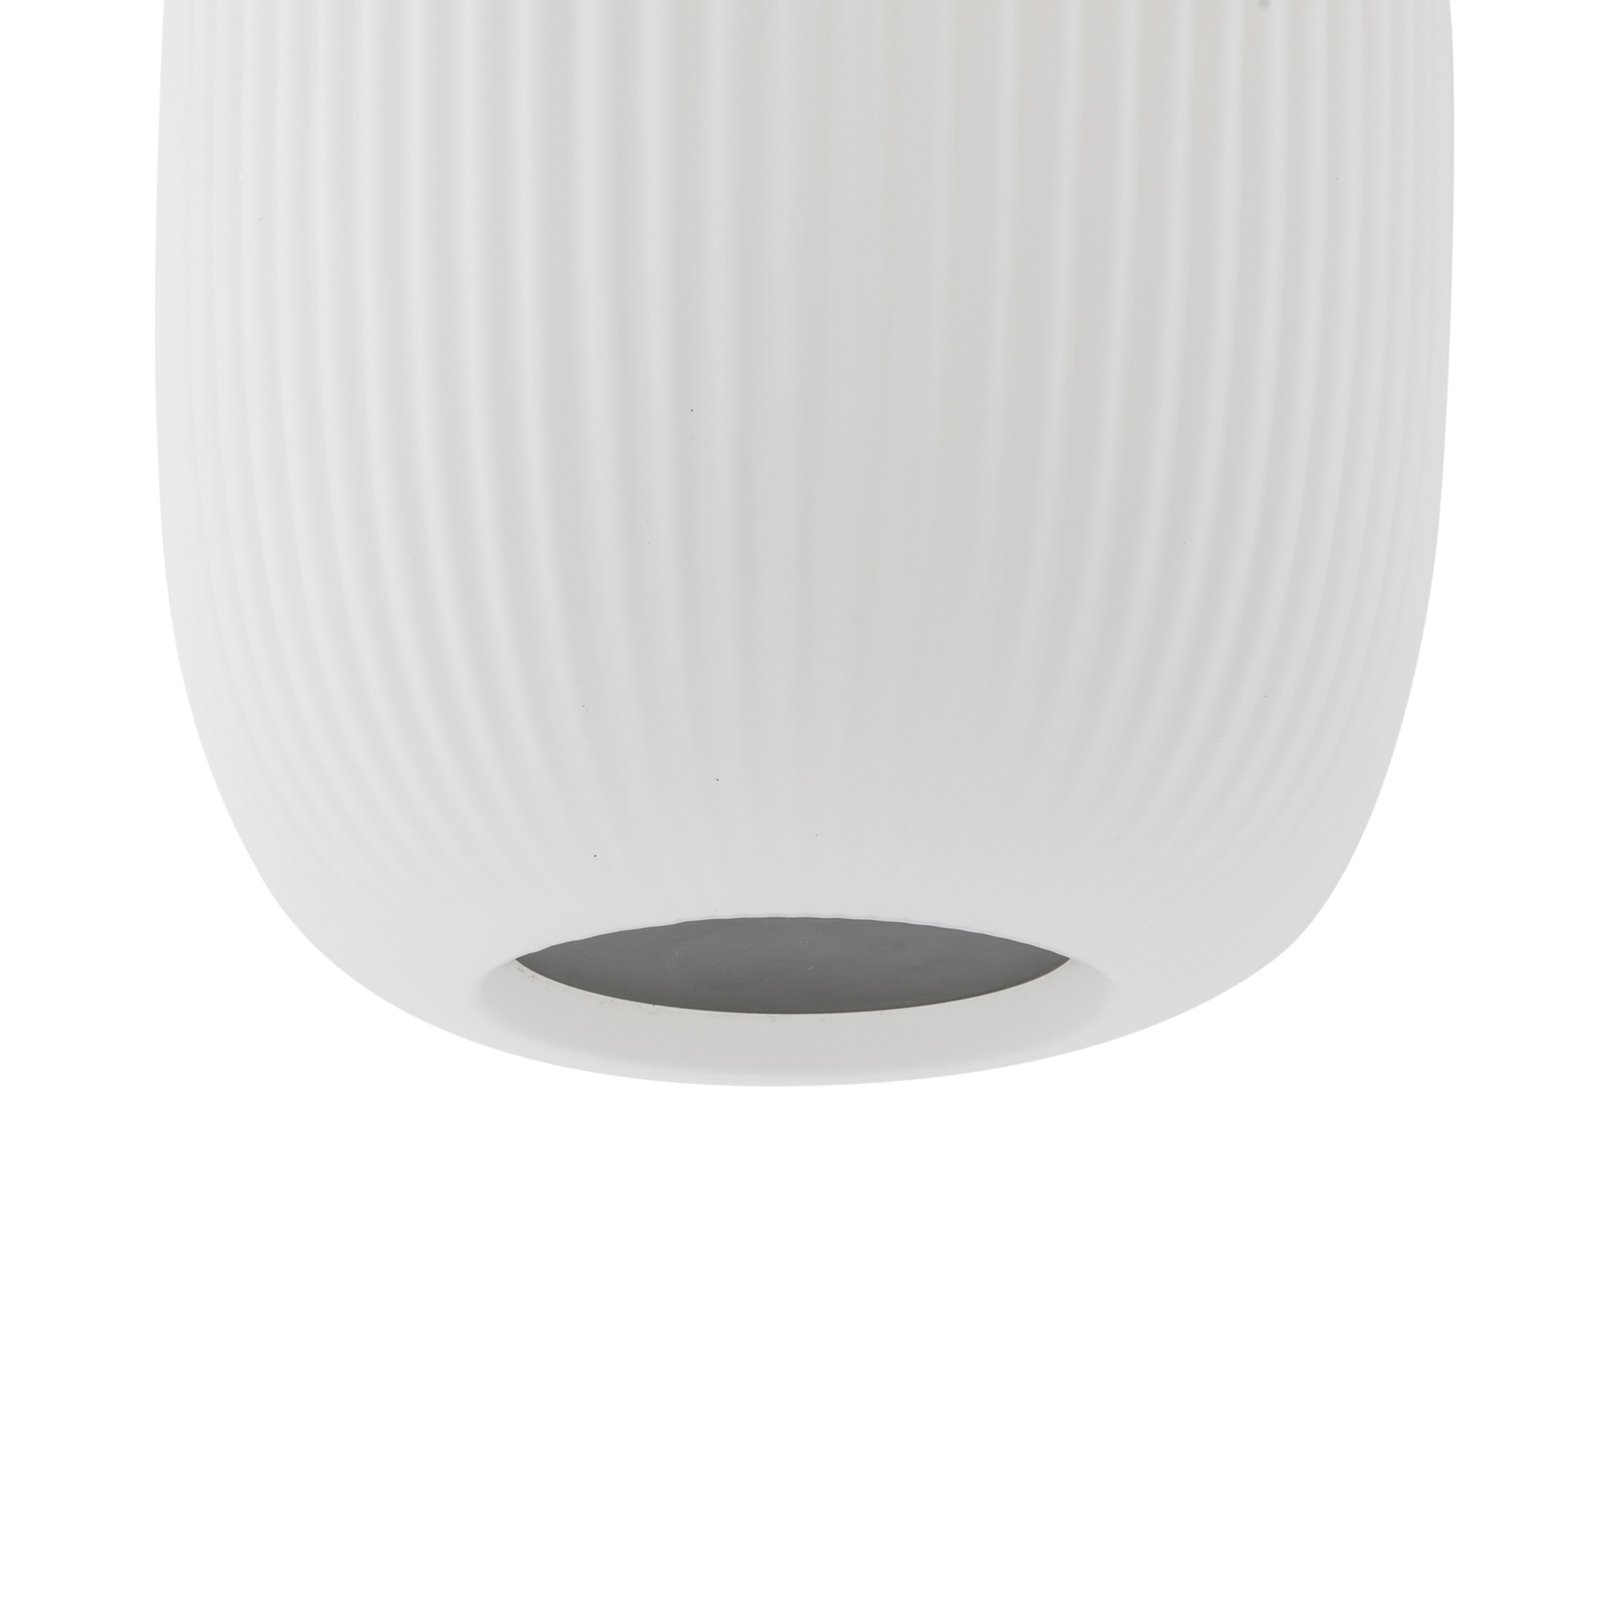 Lucande LED-pendel Lucya, 3-lys, glas, hvid, 64,5 cm